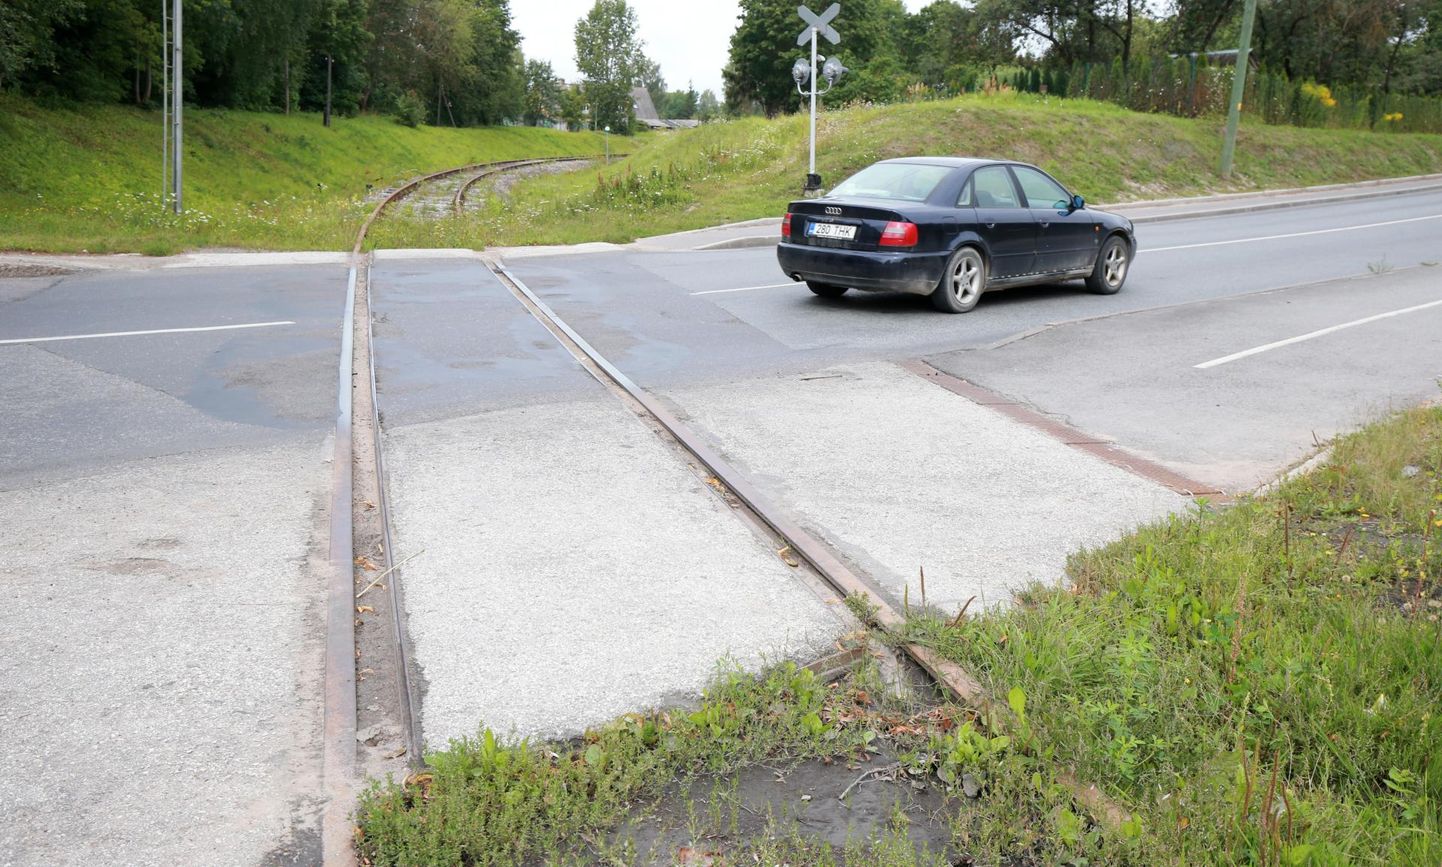 Möödunud suvel jäi Eesti Raudtee soovil Võru tänaval korda tegemata sadamaraudtee ülesõidukoht. Nüüd raputab see autojuhte aina enam, võimalik on ajutine remont.